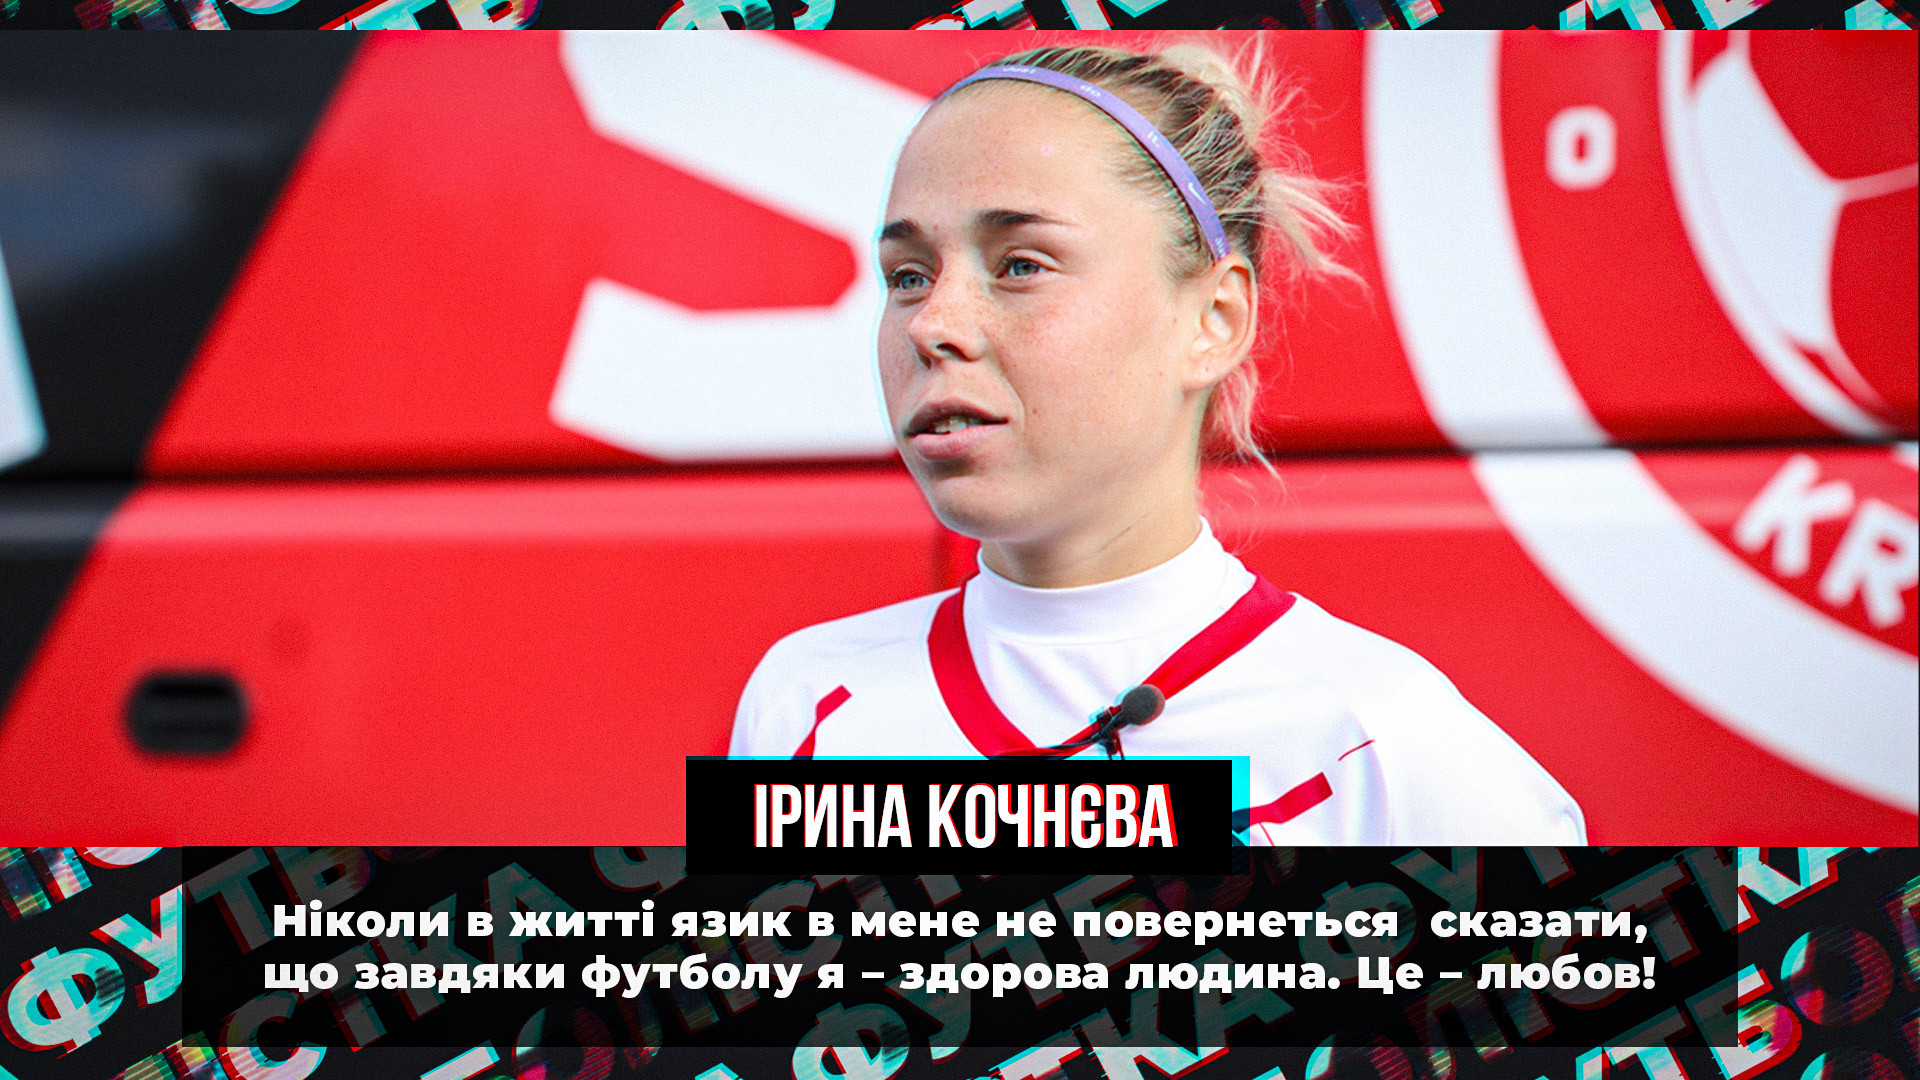 Ірина Кочнєва: Не скажу, що завдяки футболу я - здорова людина. Це - любов}